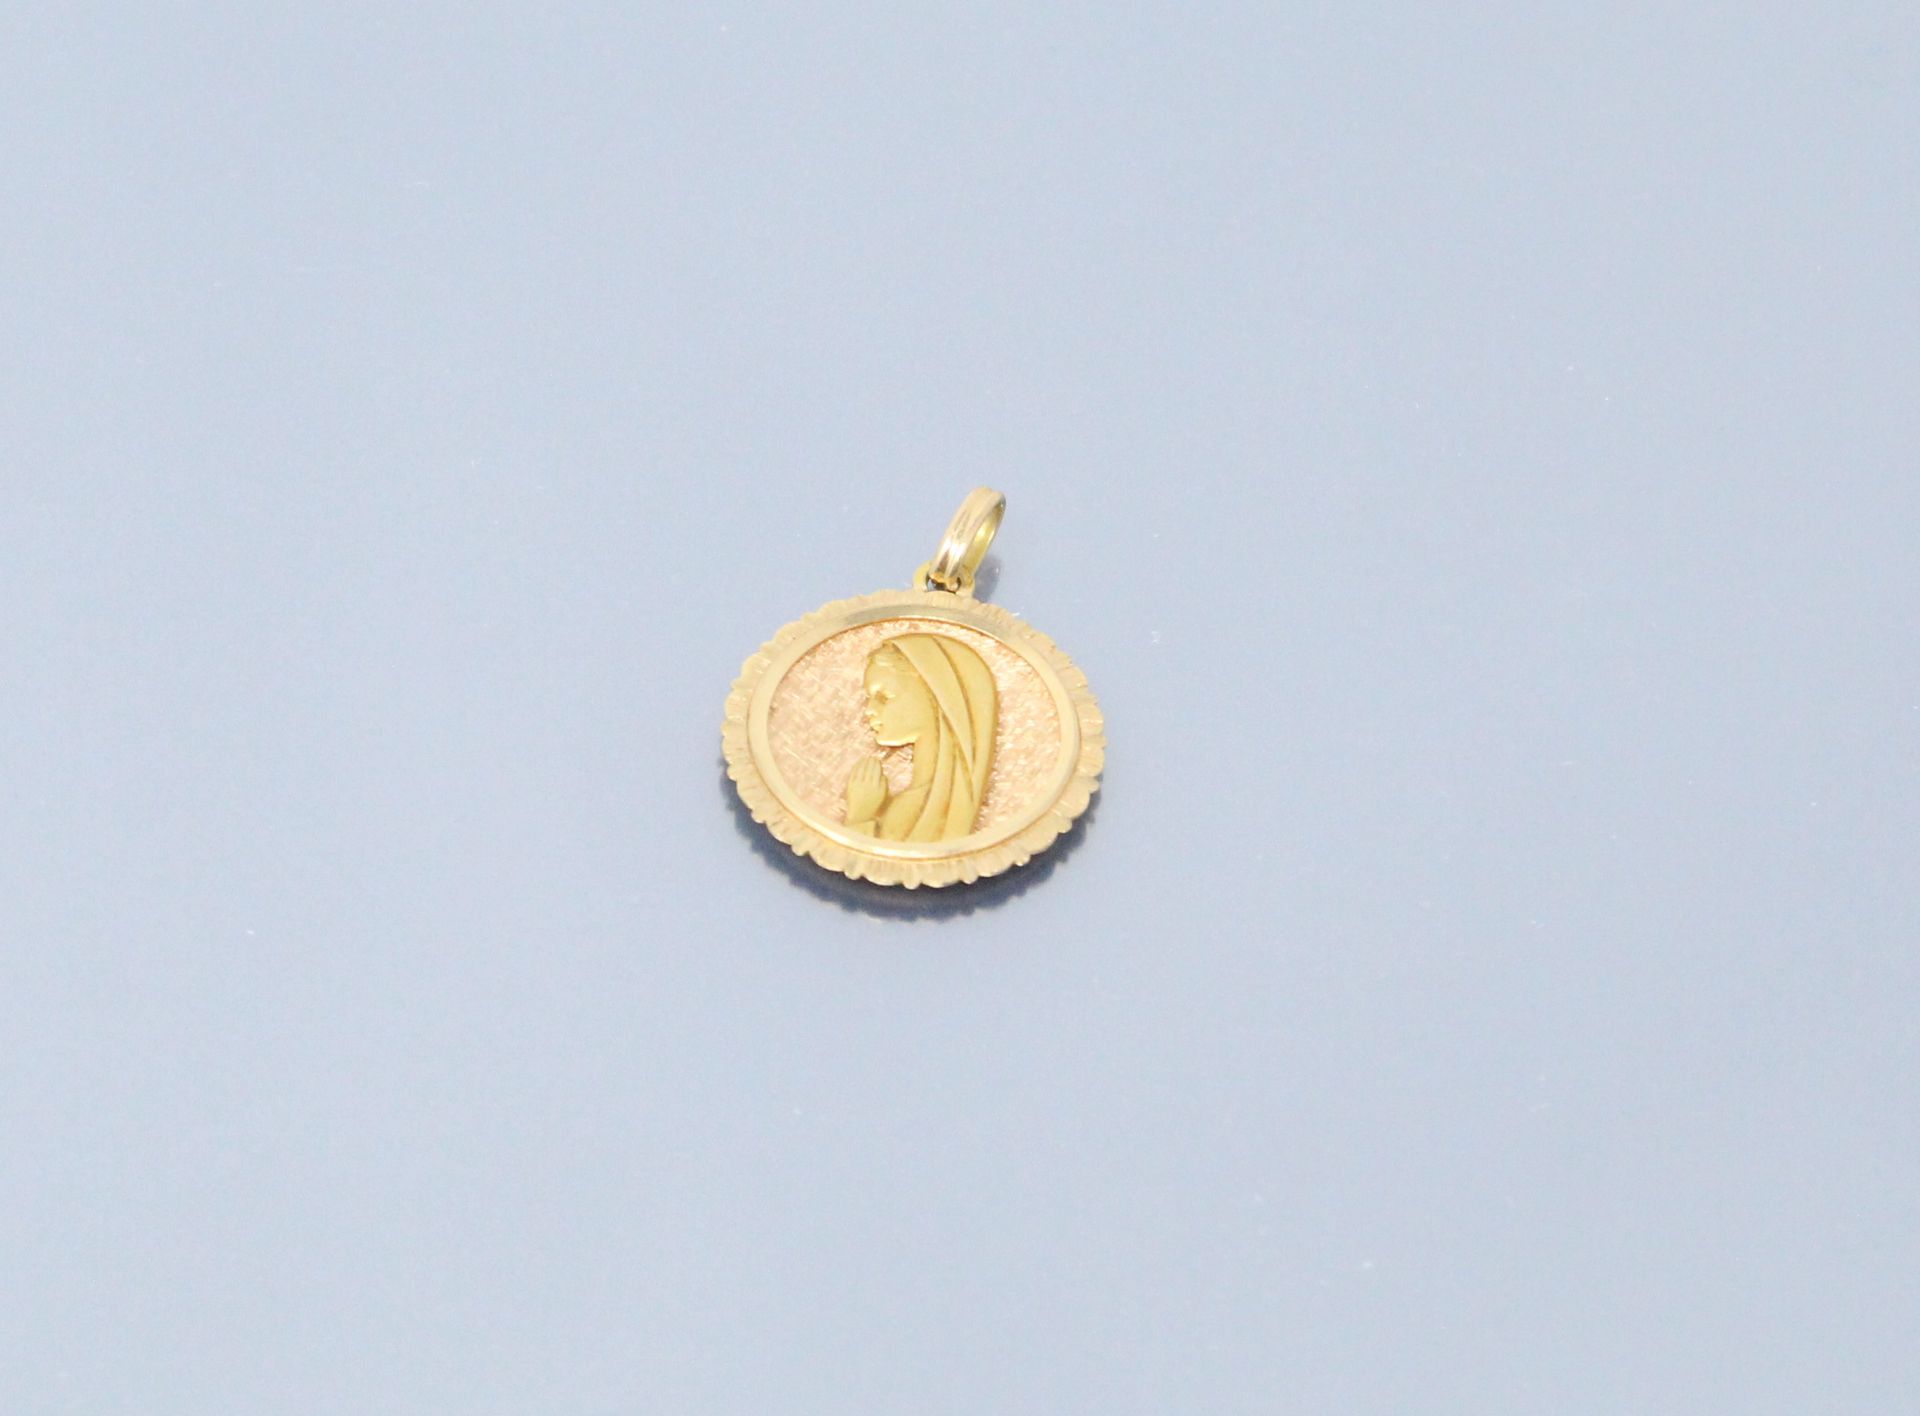 Null 18K（750）黄金奖章，背面刻有 "Sandra"，日期为 "17 September 85"。

重量：4.12克。